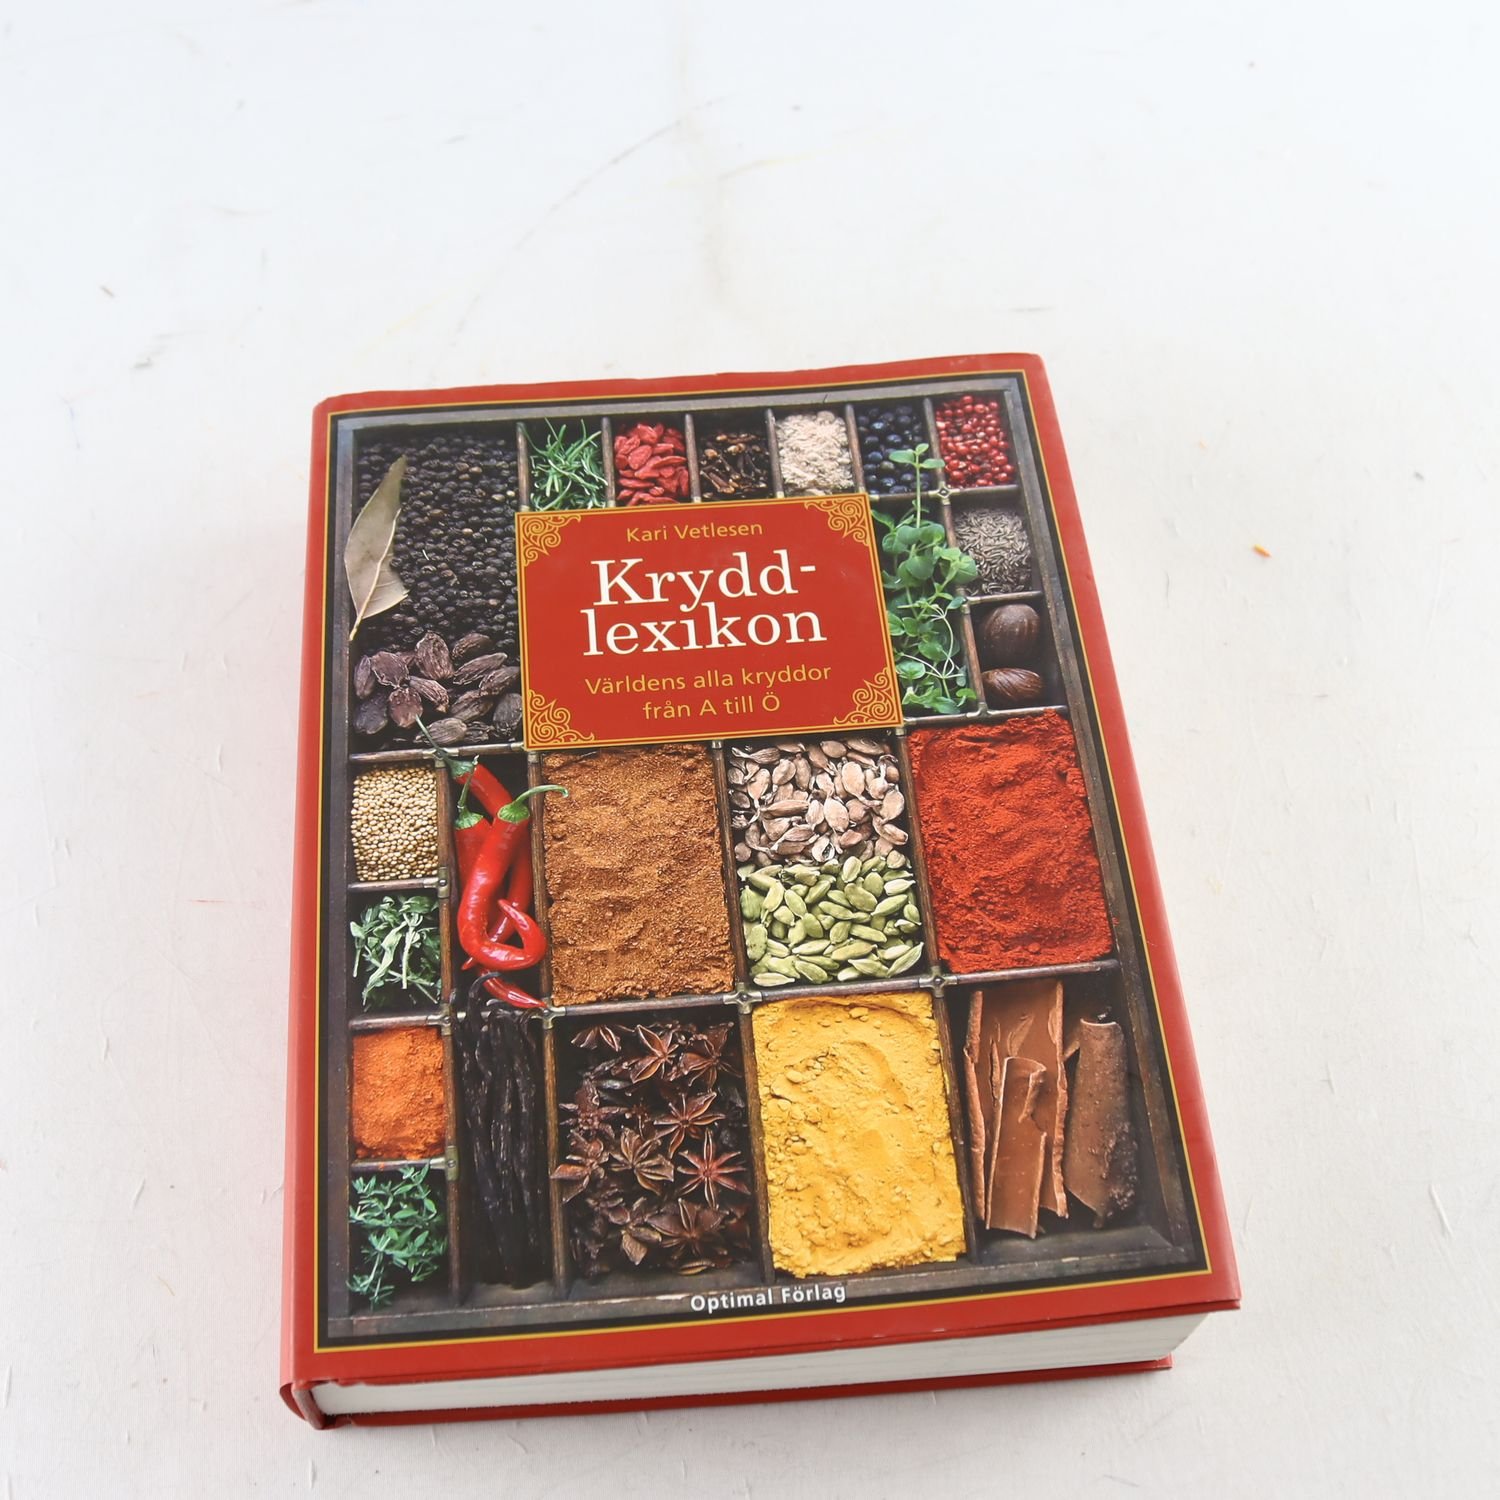 Kryddlexikon: Världens alla kryddor från A till Ö, Kari Vetlesen